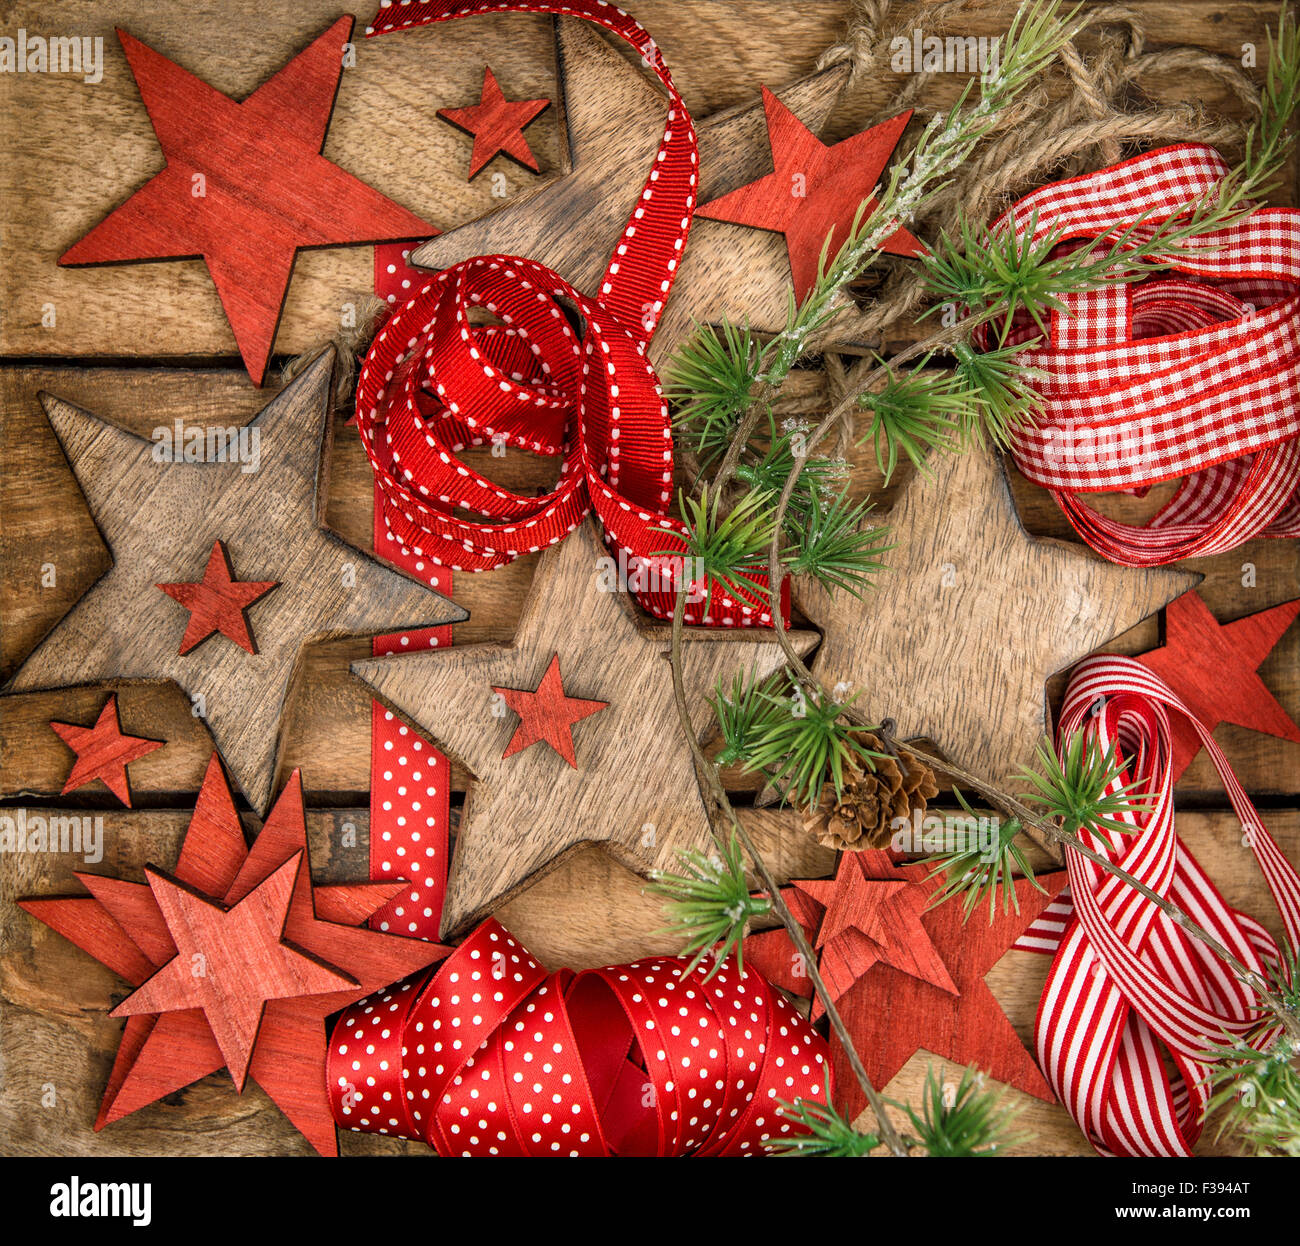 Weihnachtssterne Dekorationen aus Holz und roten Bändern. Nostalgisches Retro-Stil Bild Stockfoto